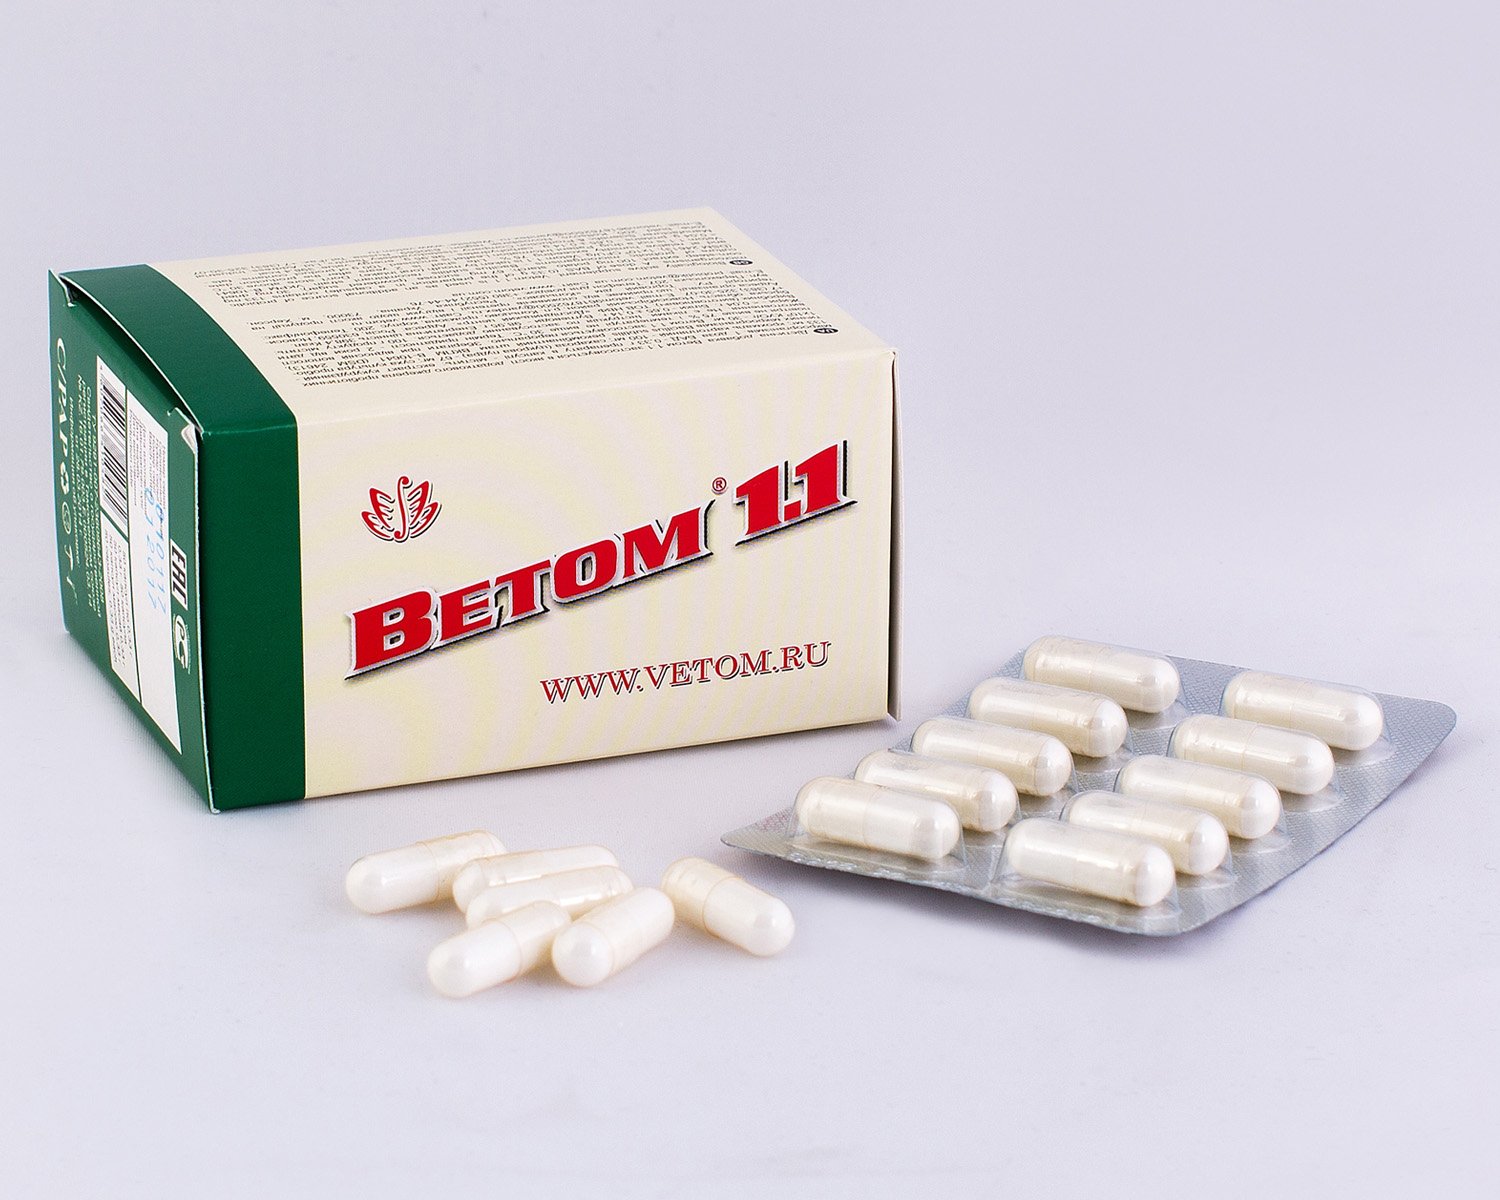 Vetom 1.1 probiotic immune system modulator 50 capsules